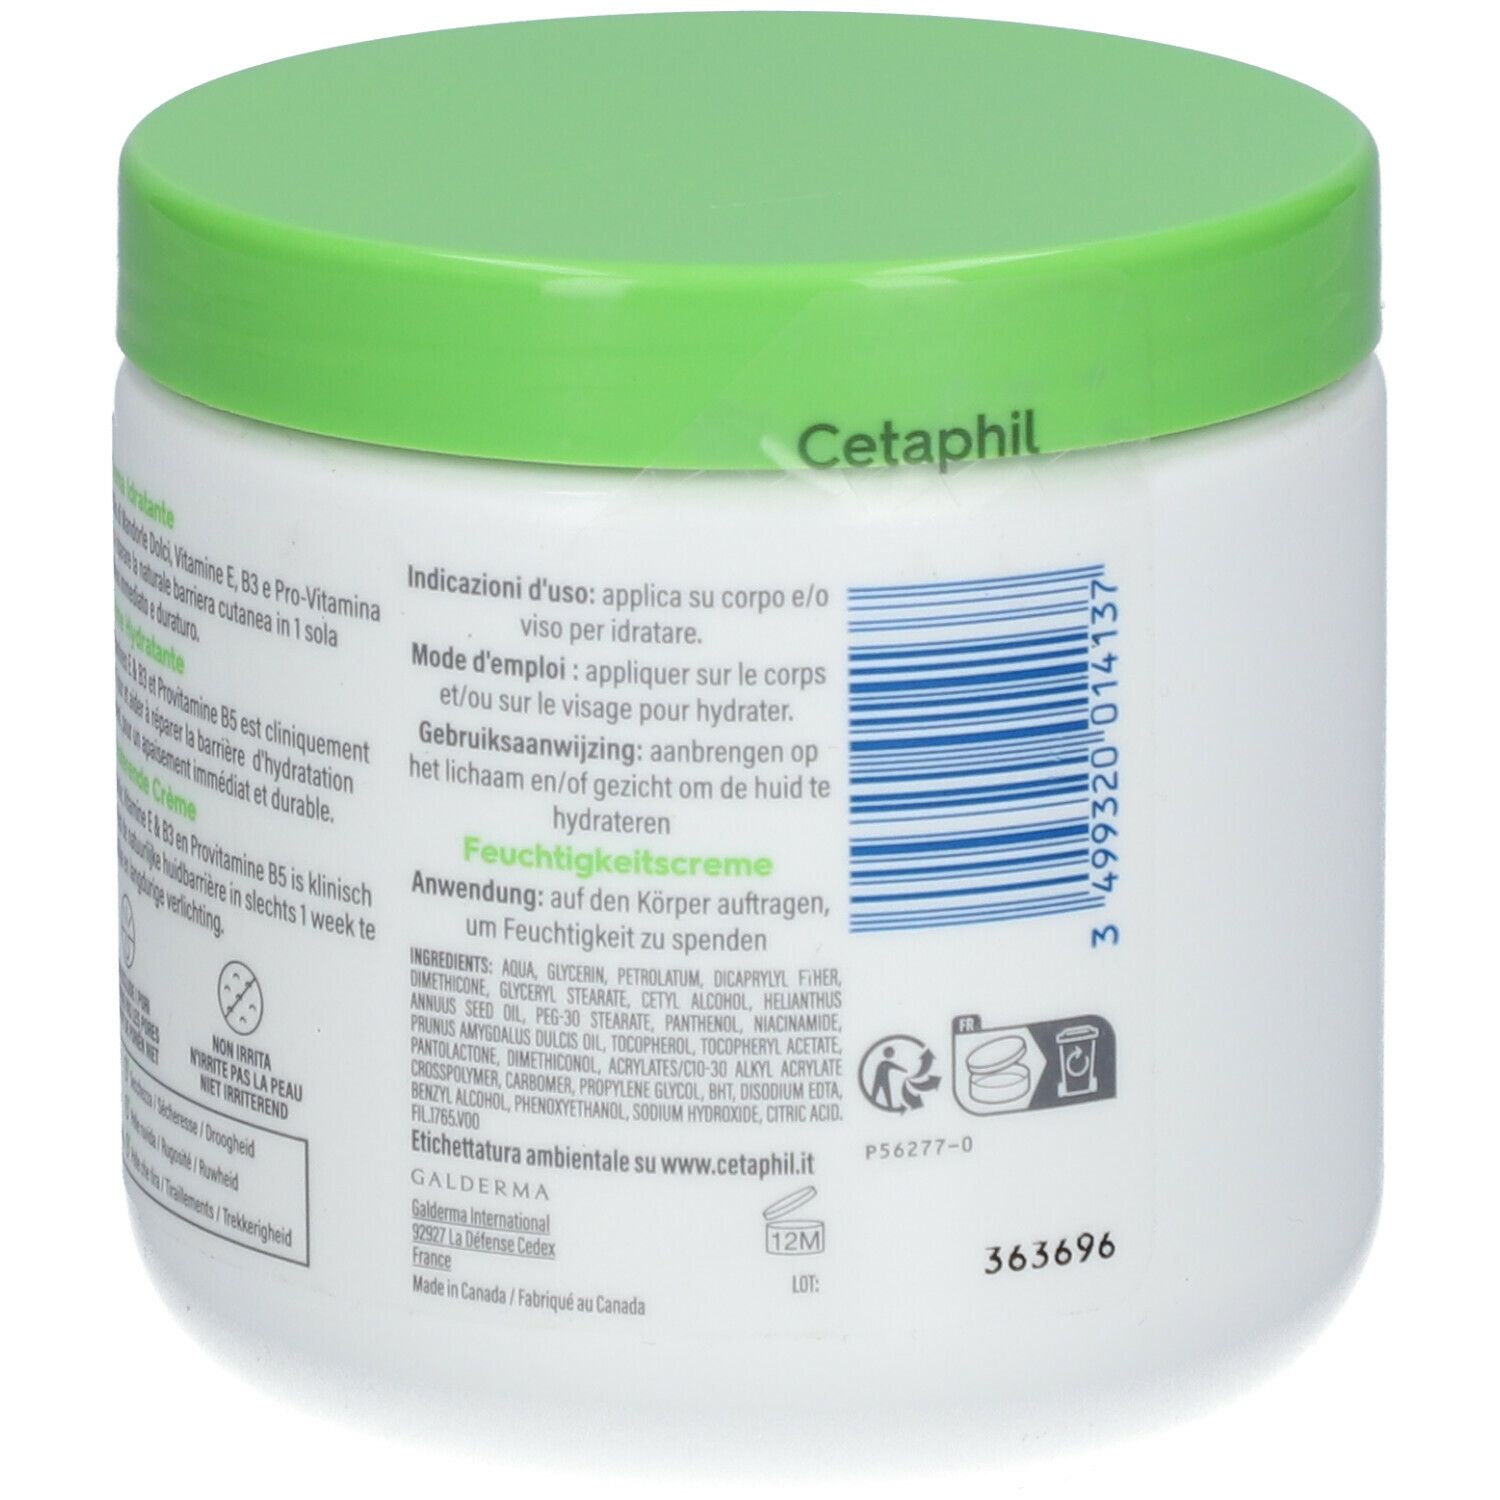 Cetaphil Crème hydratante 450 g